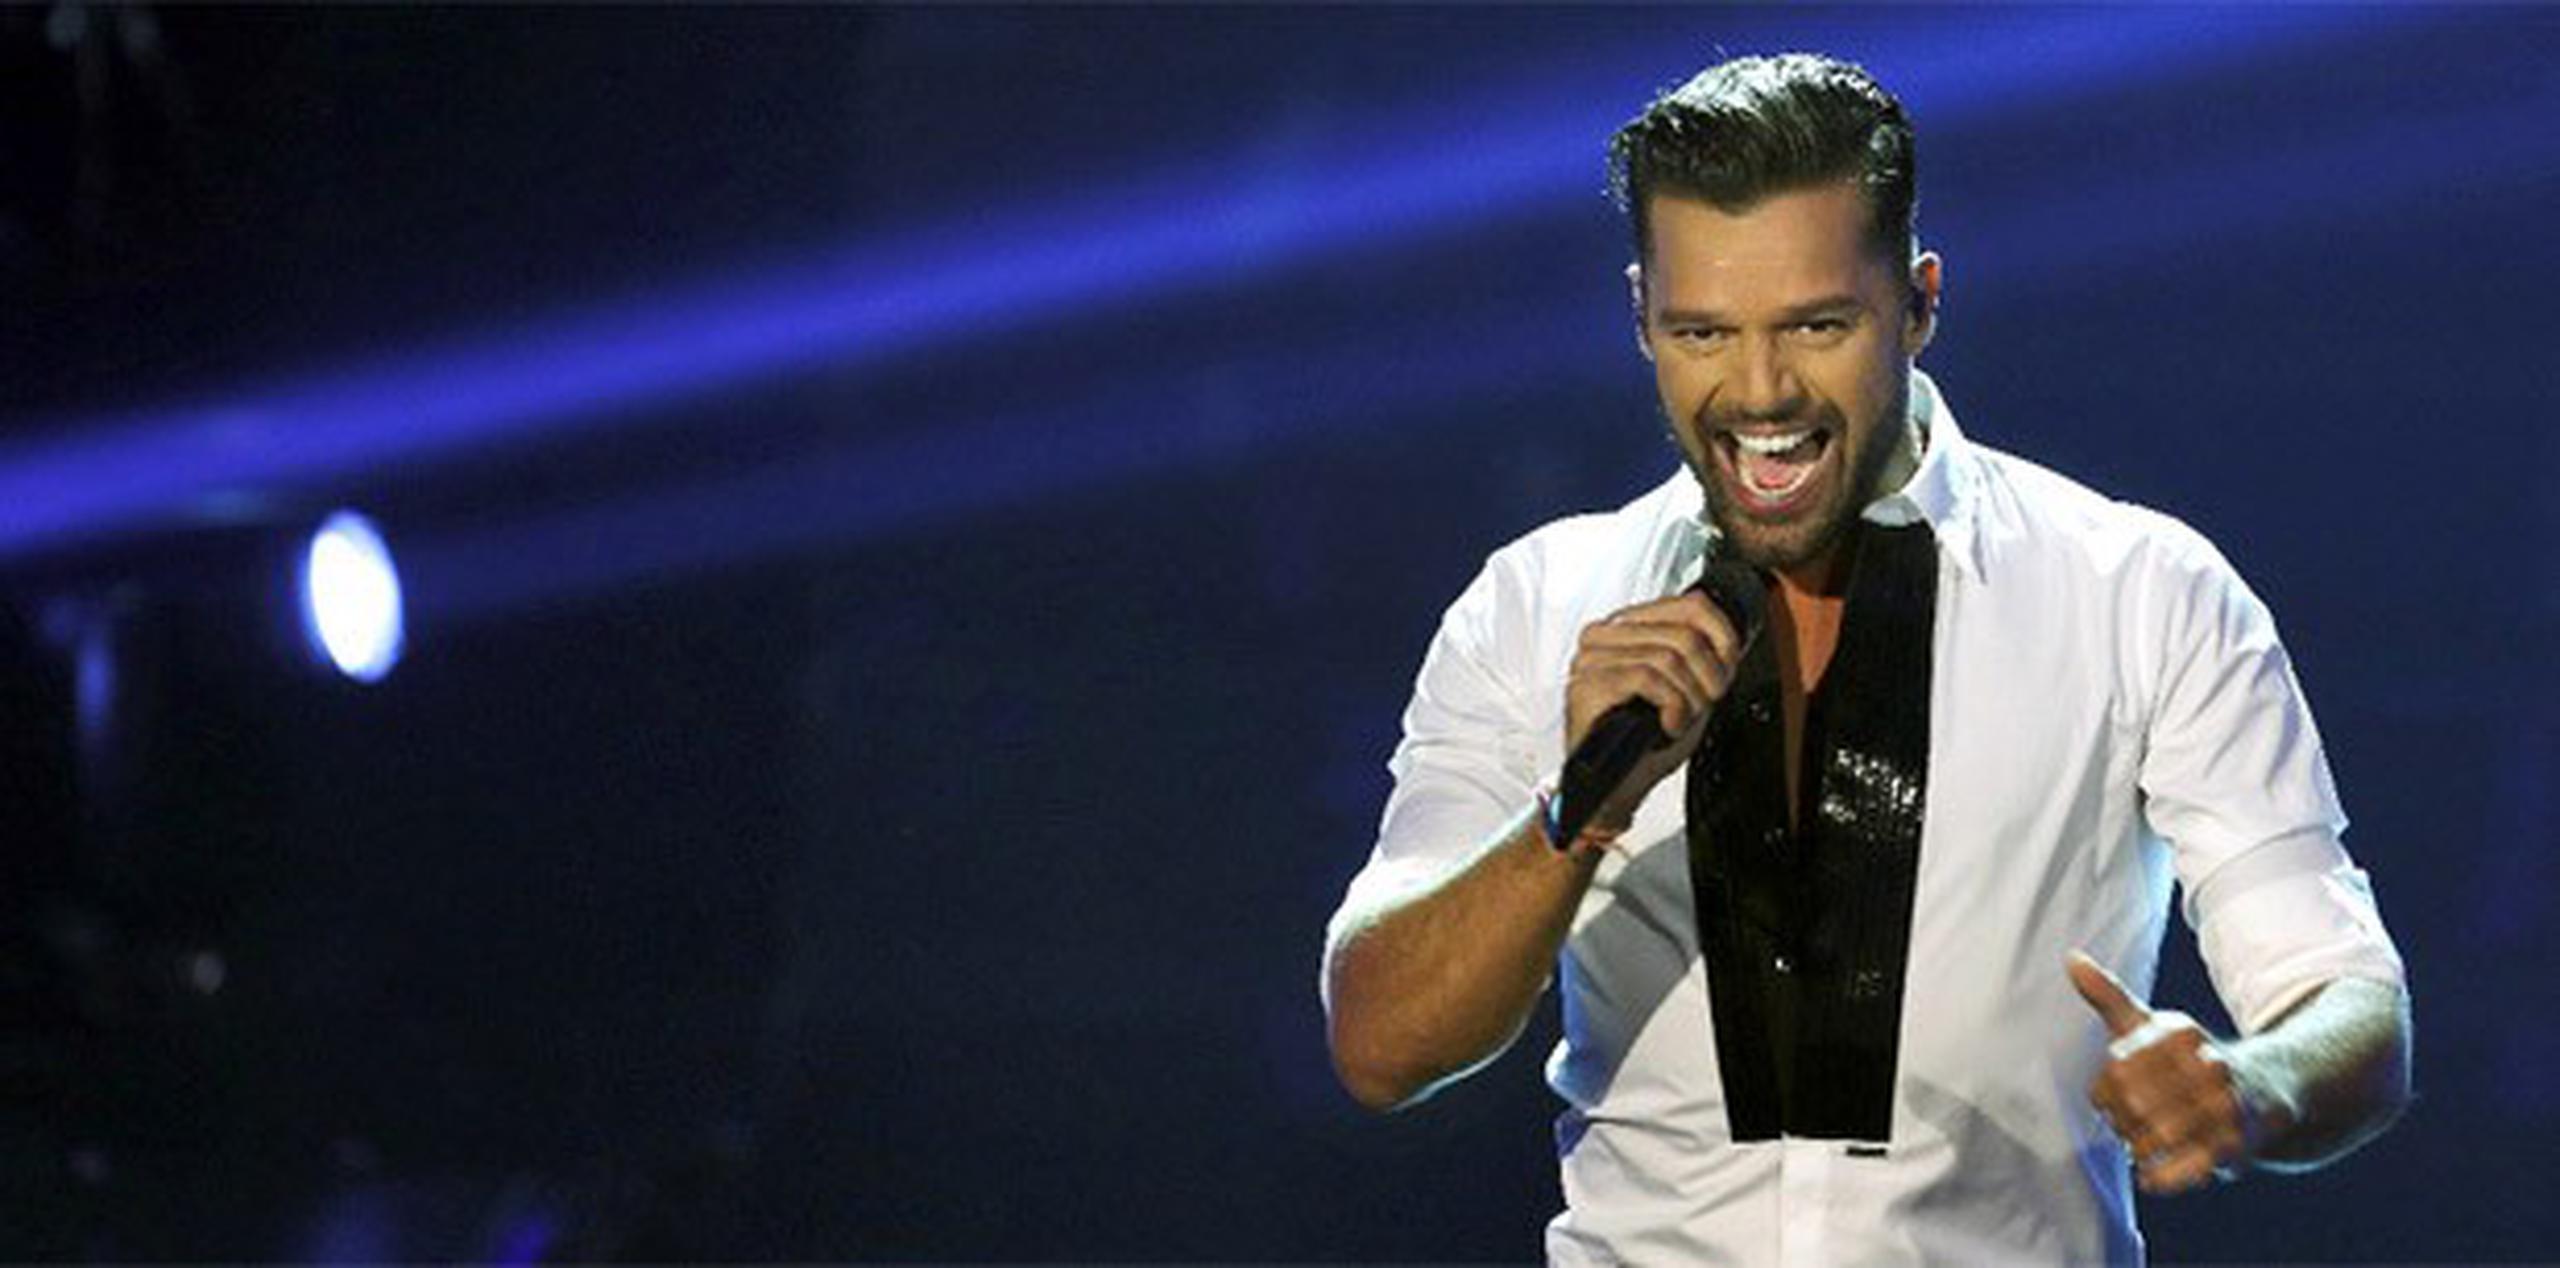 Las personas pudieran ganar una cena privada con Ricky Martin. (Archivo)